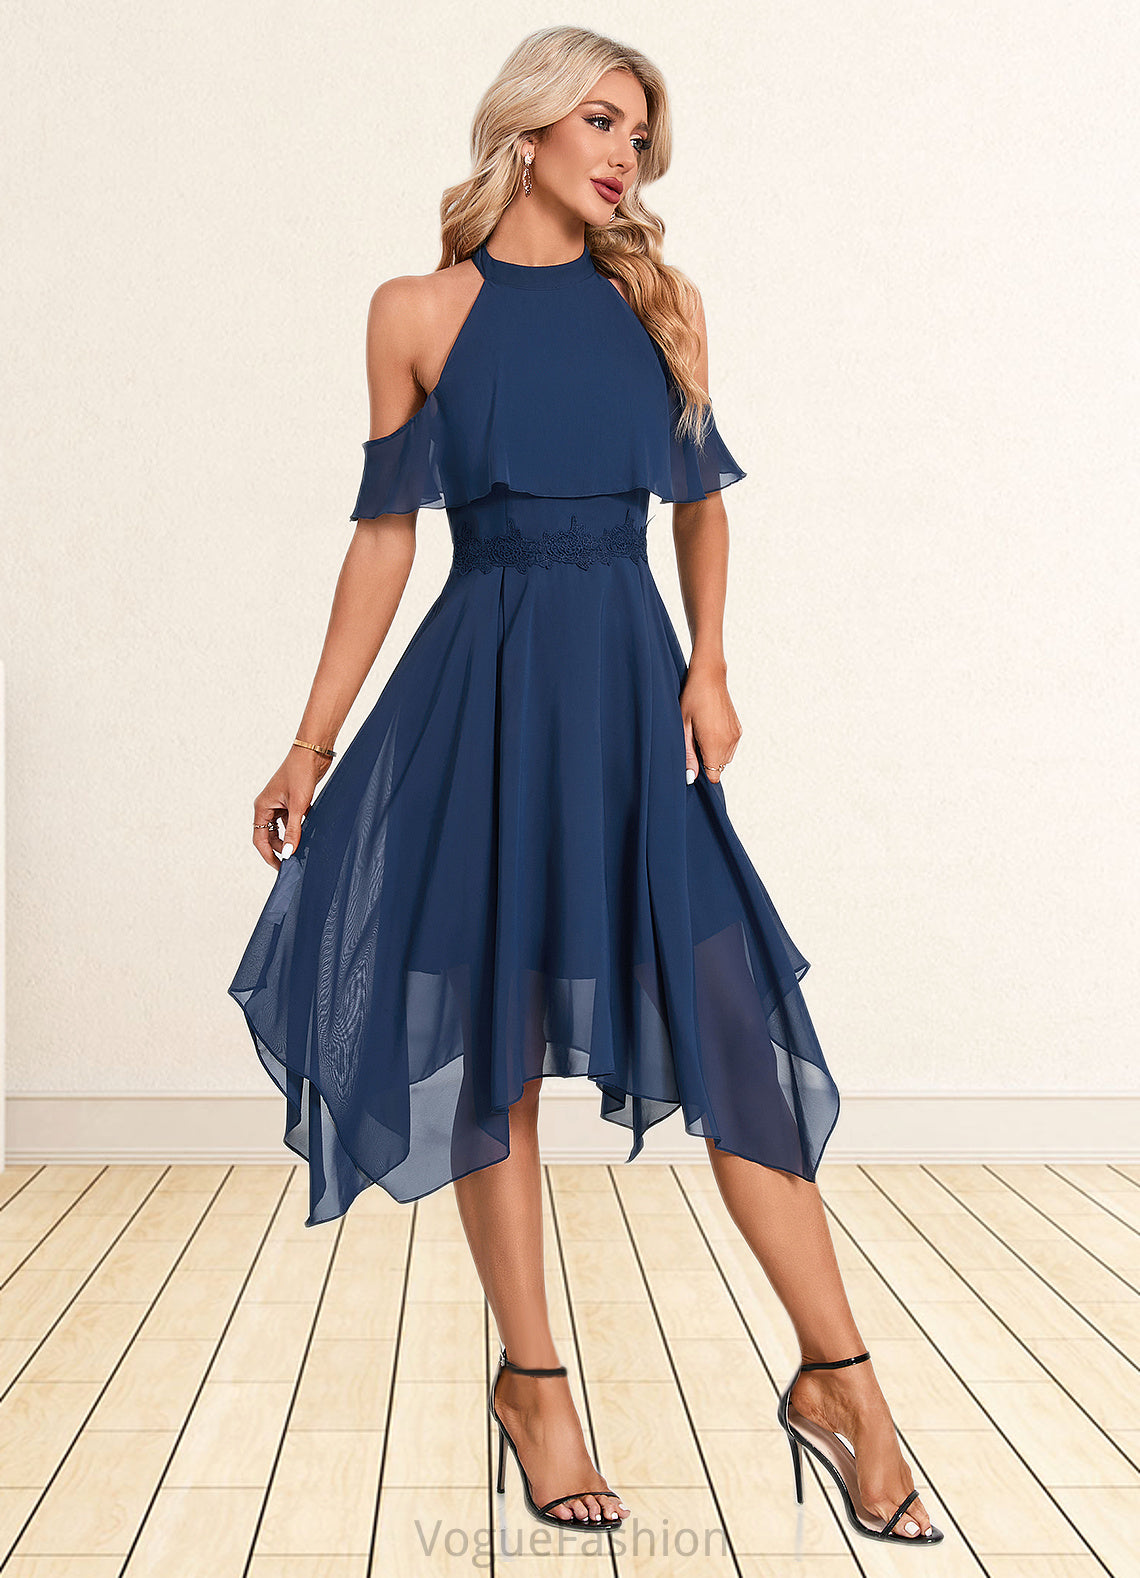 Thalia Appliques Lace Off the Shoulder Elegant A-line Chiffon Asymmetrical Dresses DKP0022489